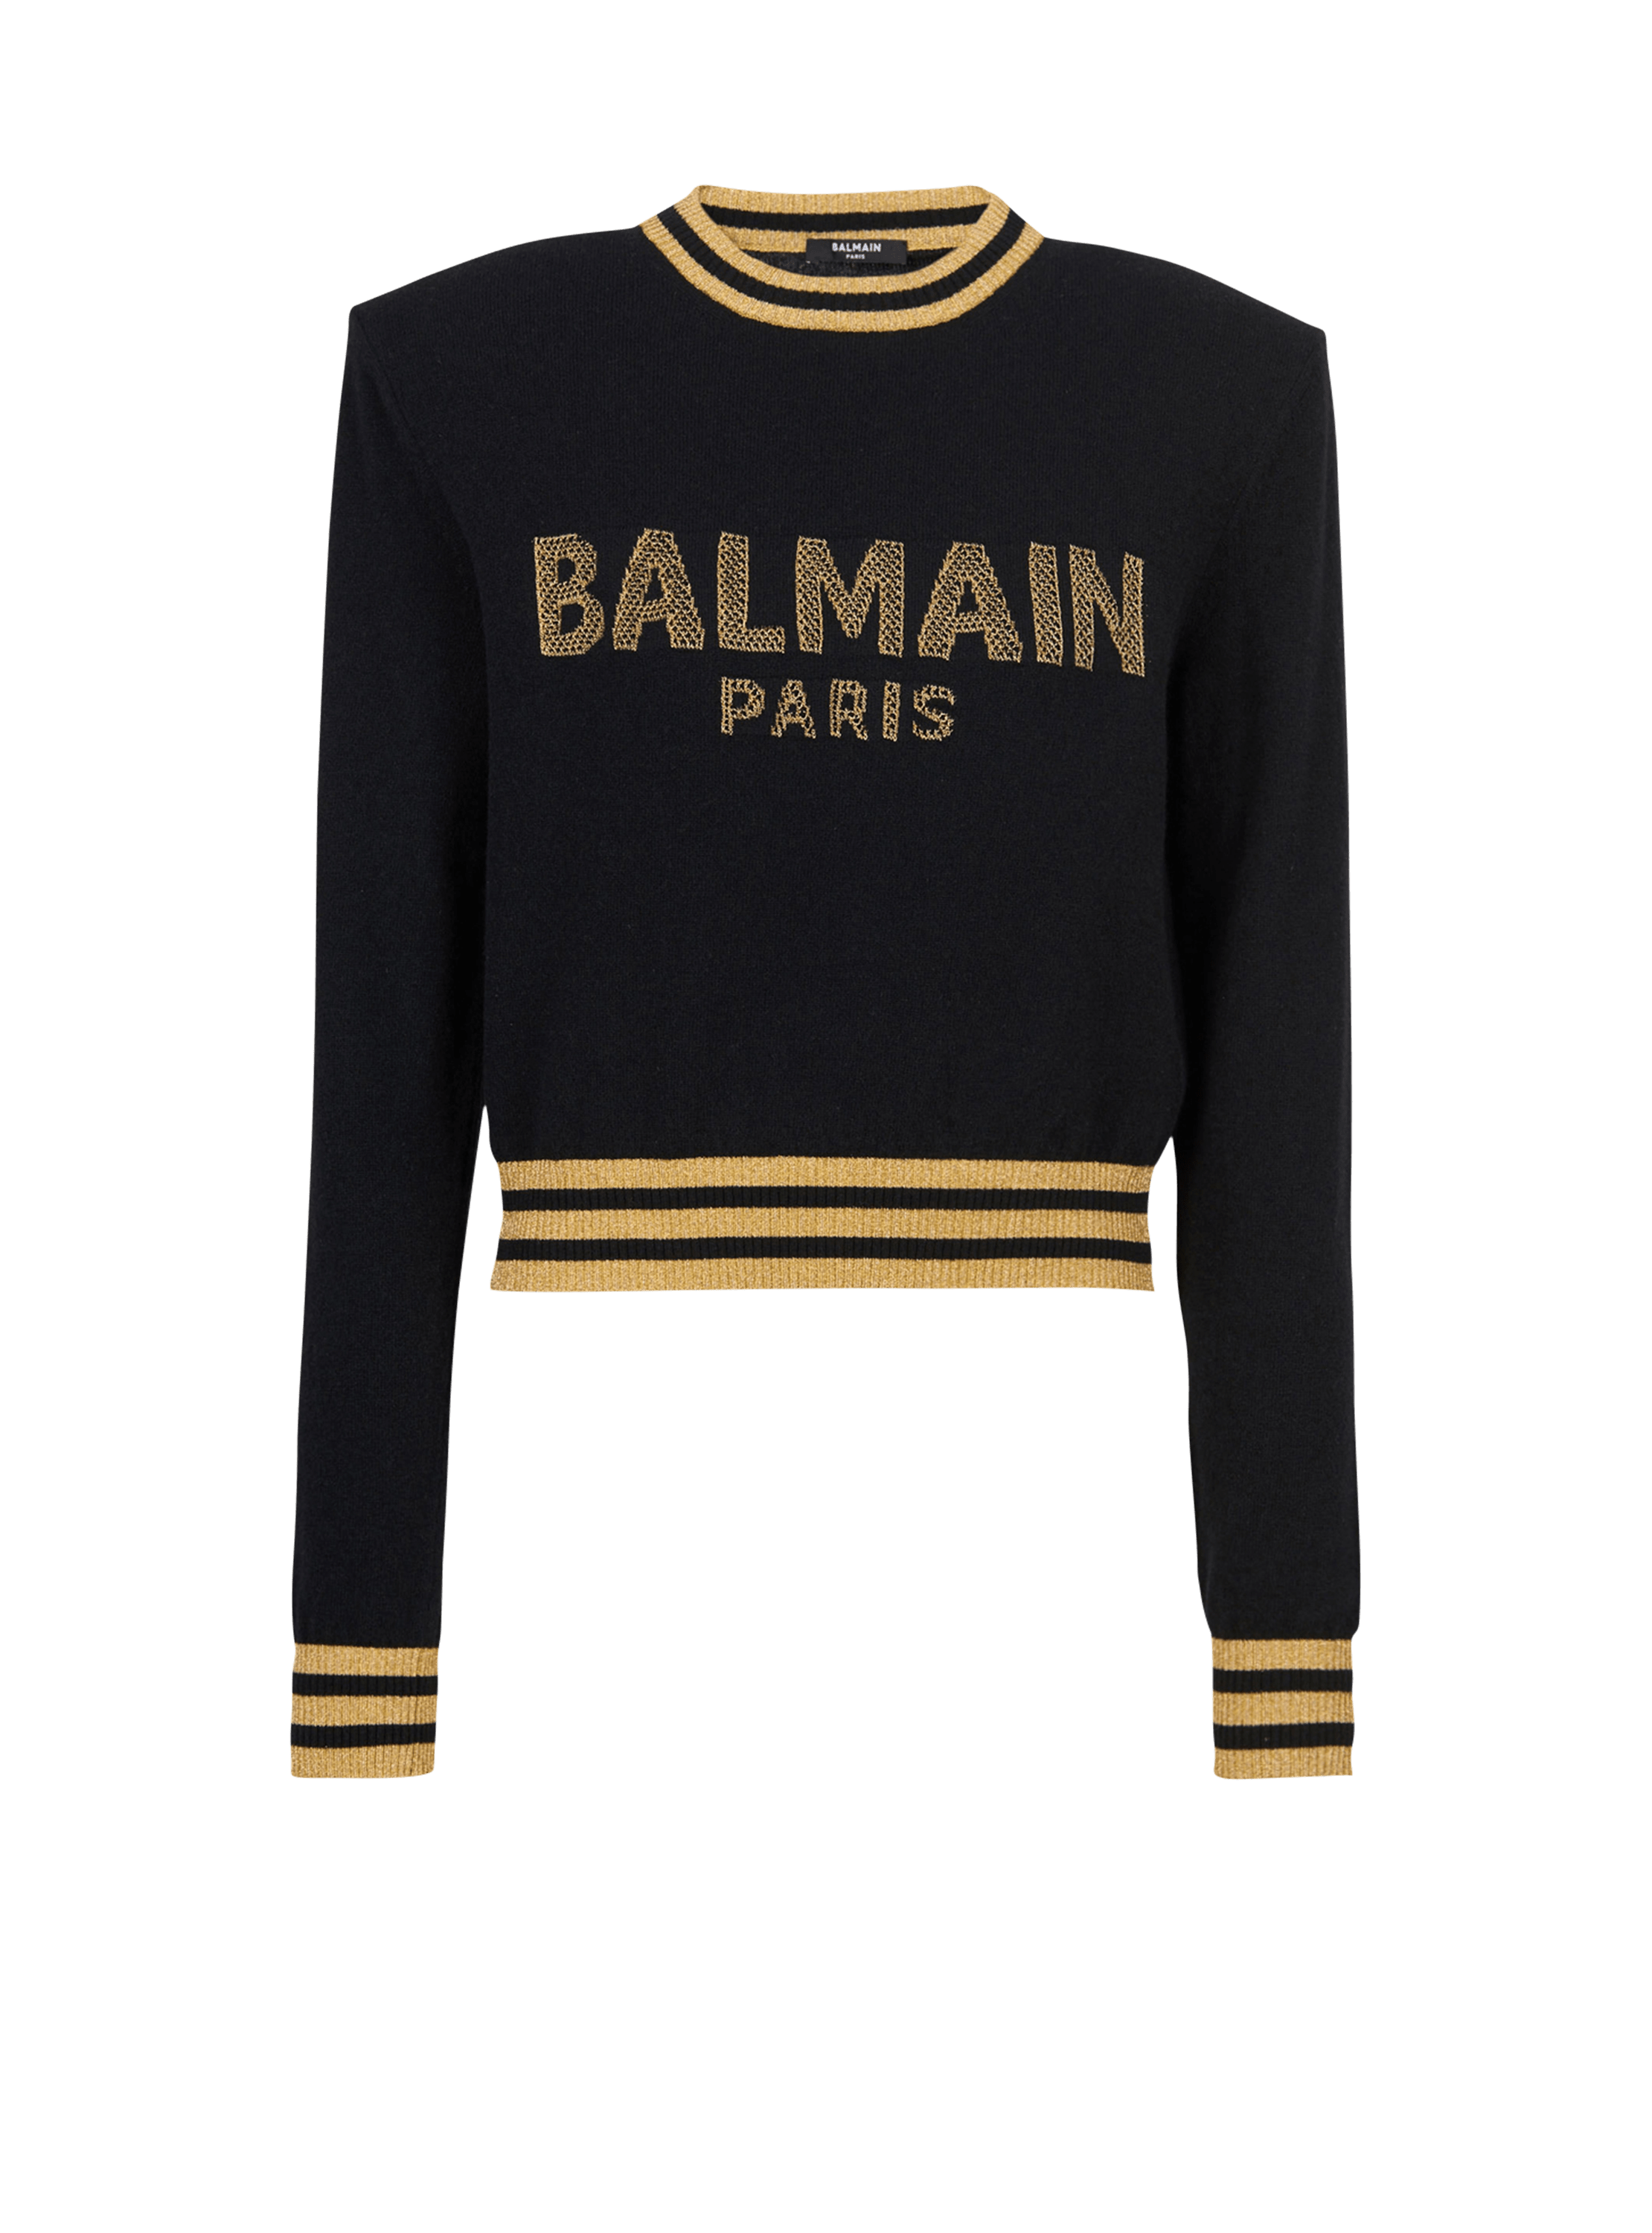 Cropped wool sweatshirt with gold Balmain logo, black, hi-res